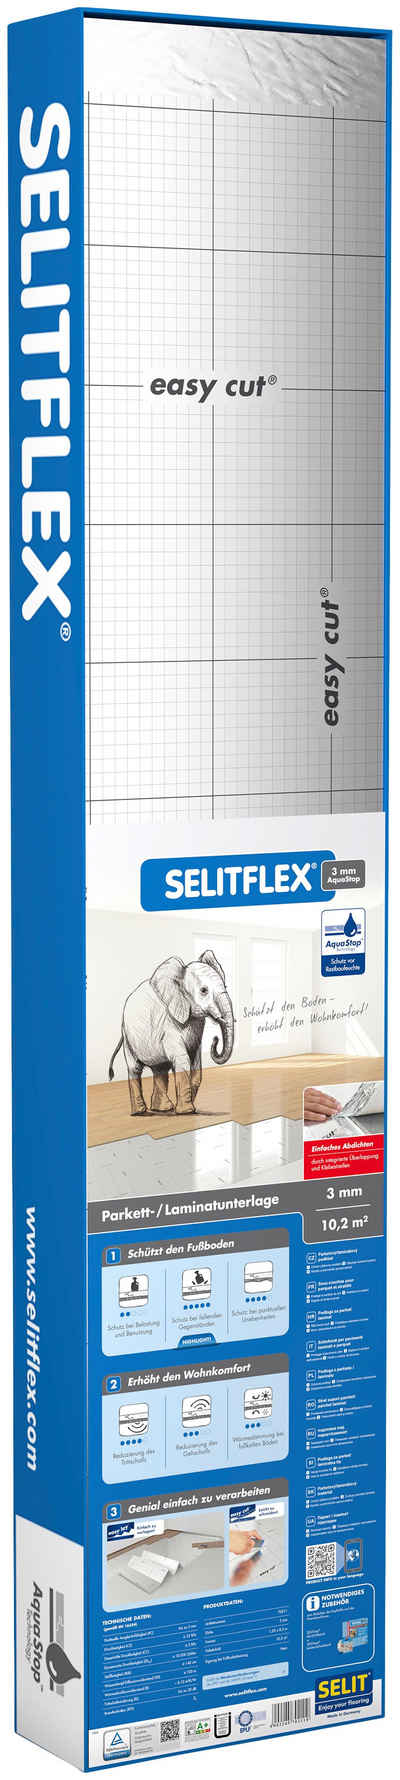 Selit Trittschalldämmplatte »SELITFLEX«, 3 mm, 10,2 m², Dämmunterlage für Parkett-/Laminatböden, faltbar, mit Tape